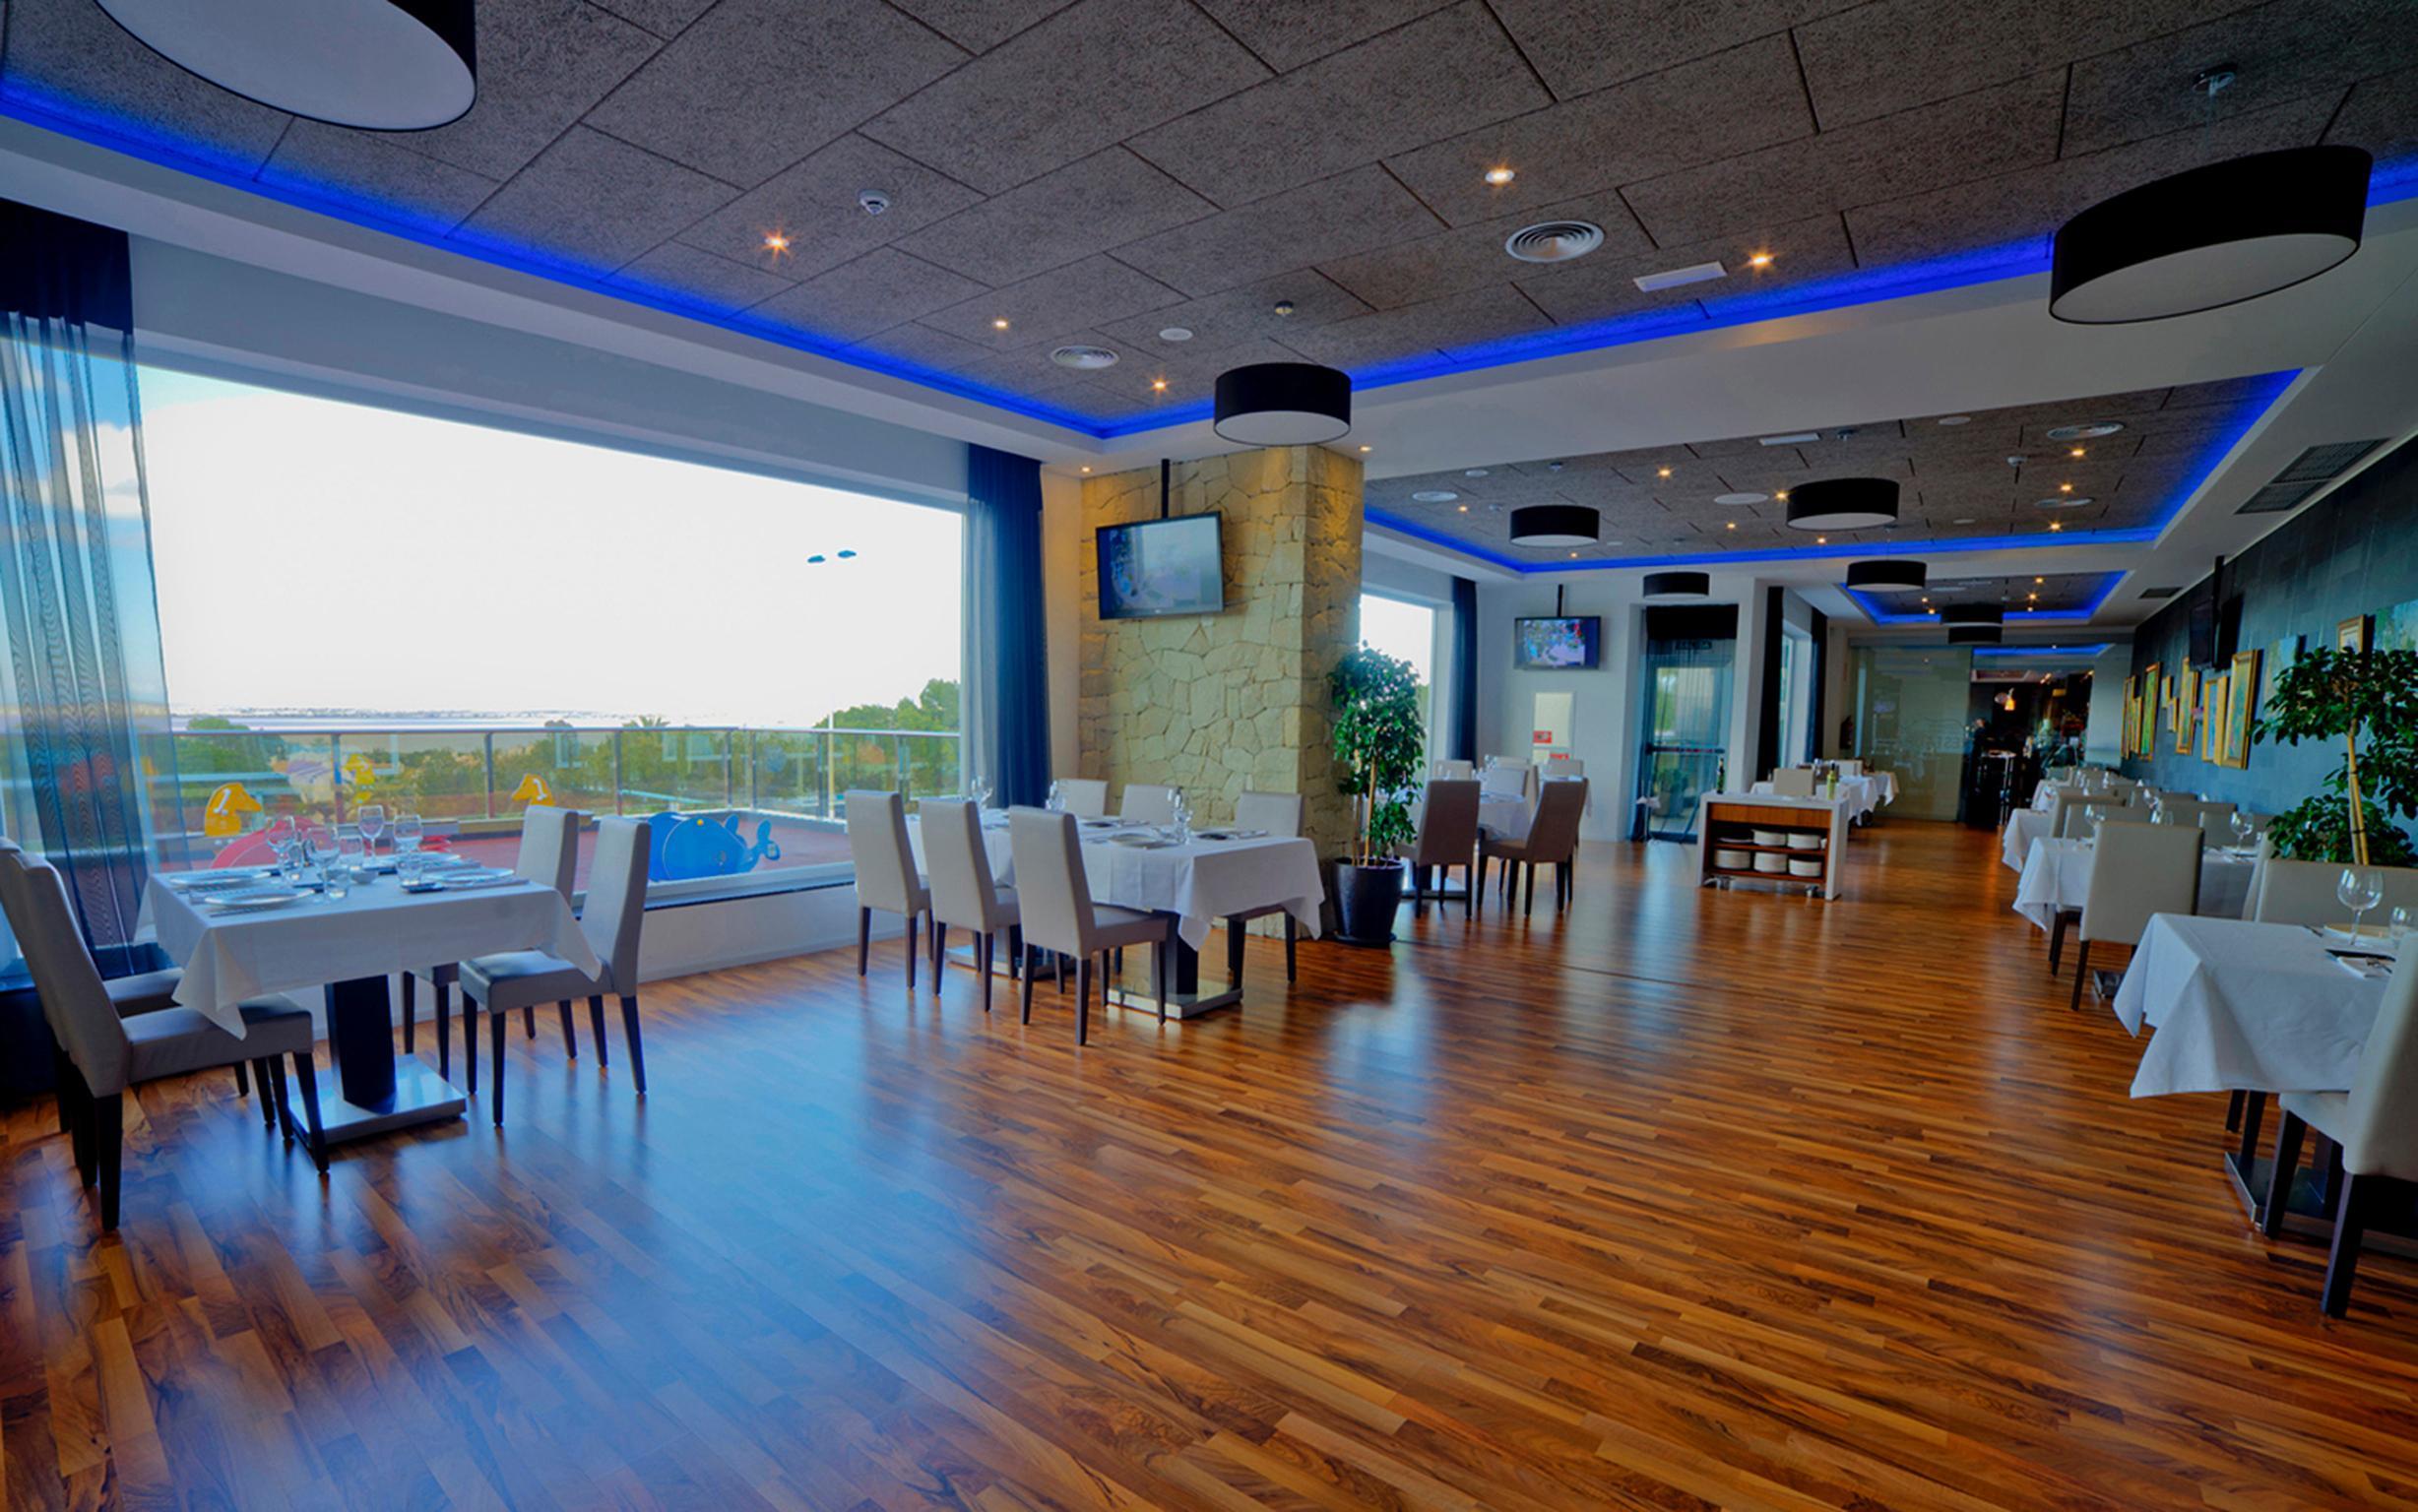 Dna Monse Hotel Spa & Golf Torrevieja Zewnętrze zdjęcie